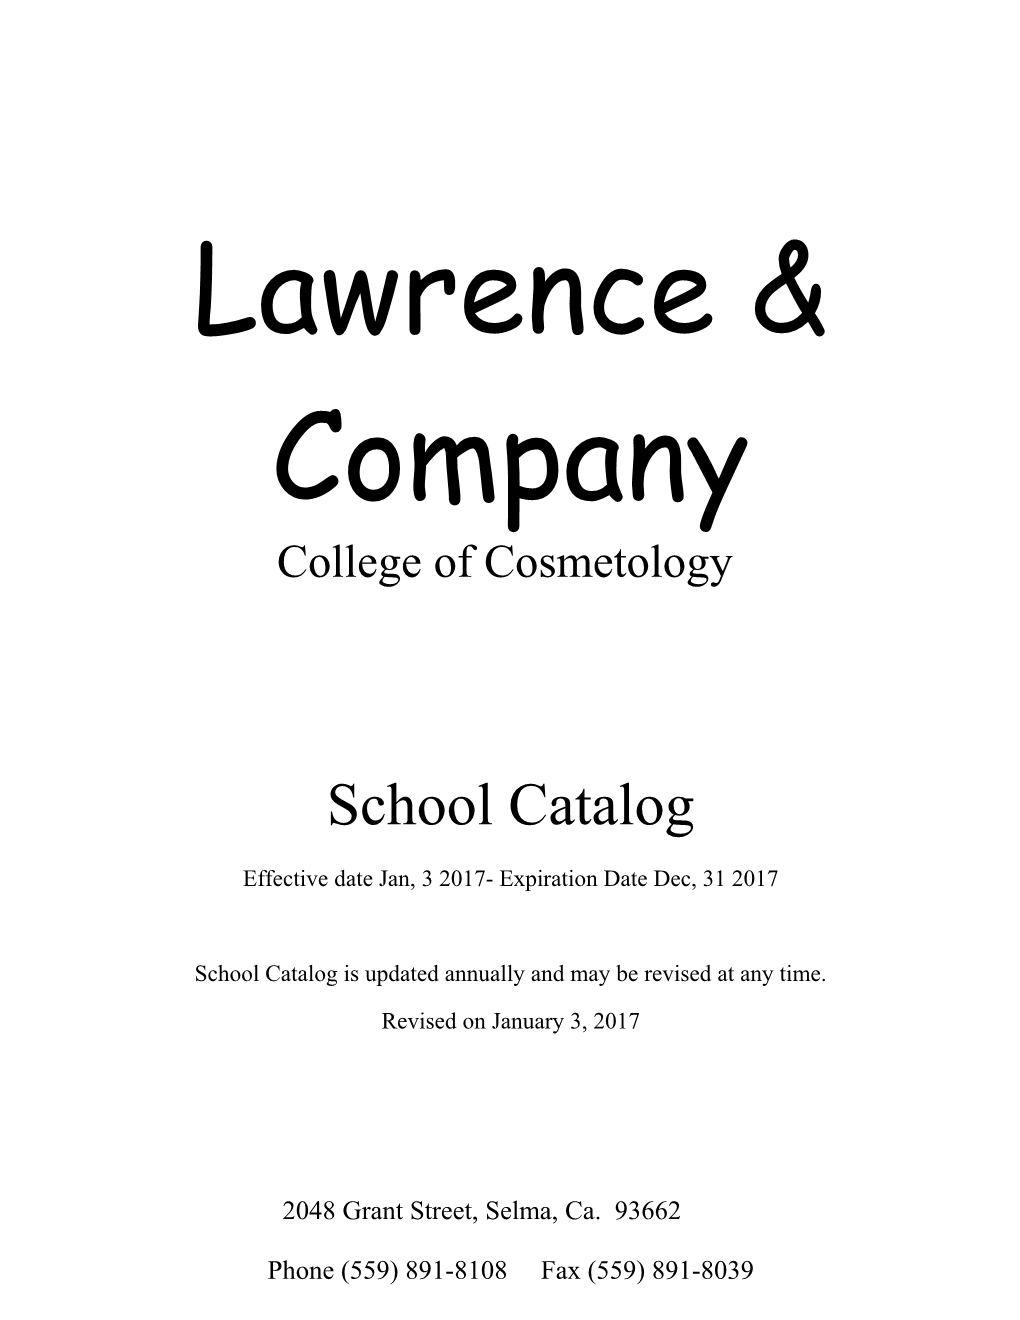 Lawrence & Company